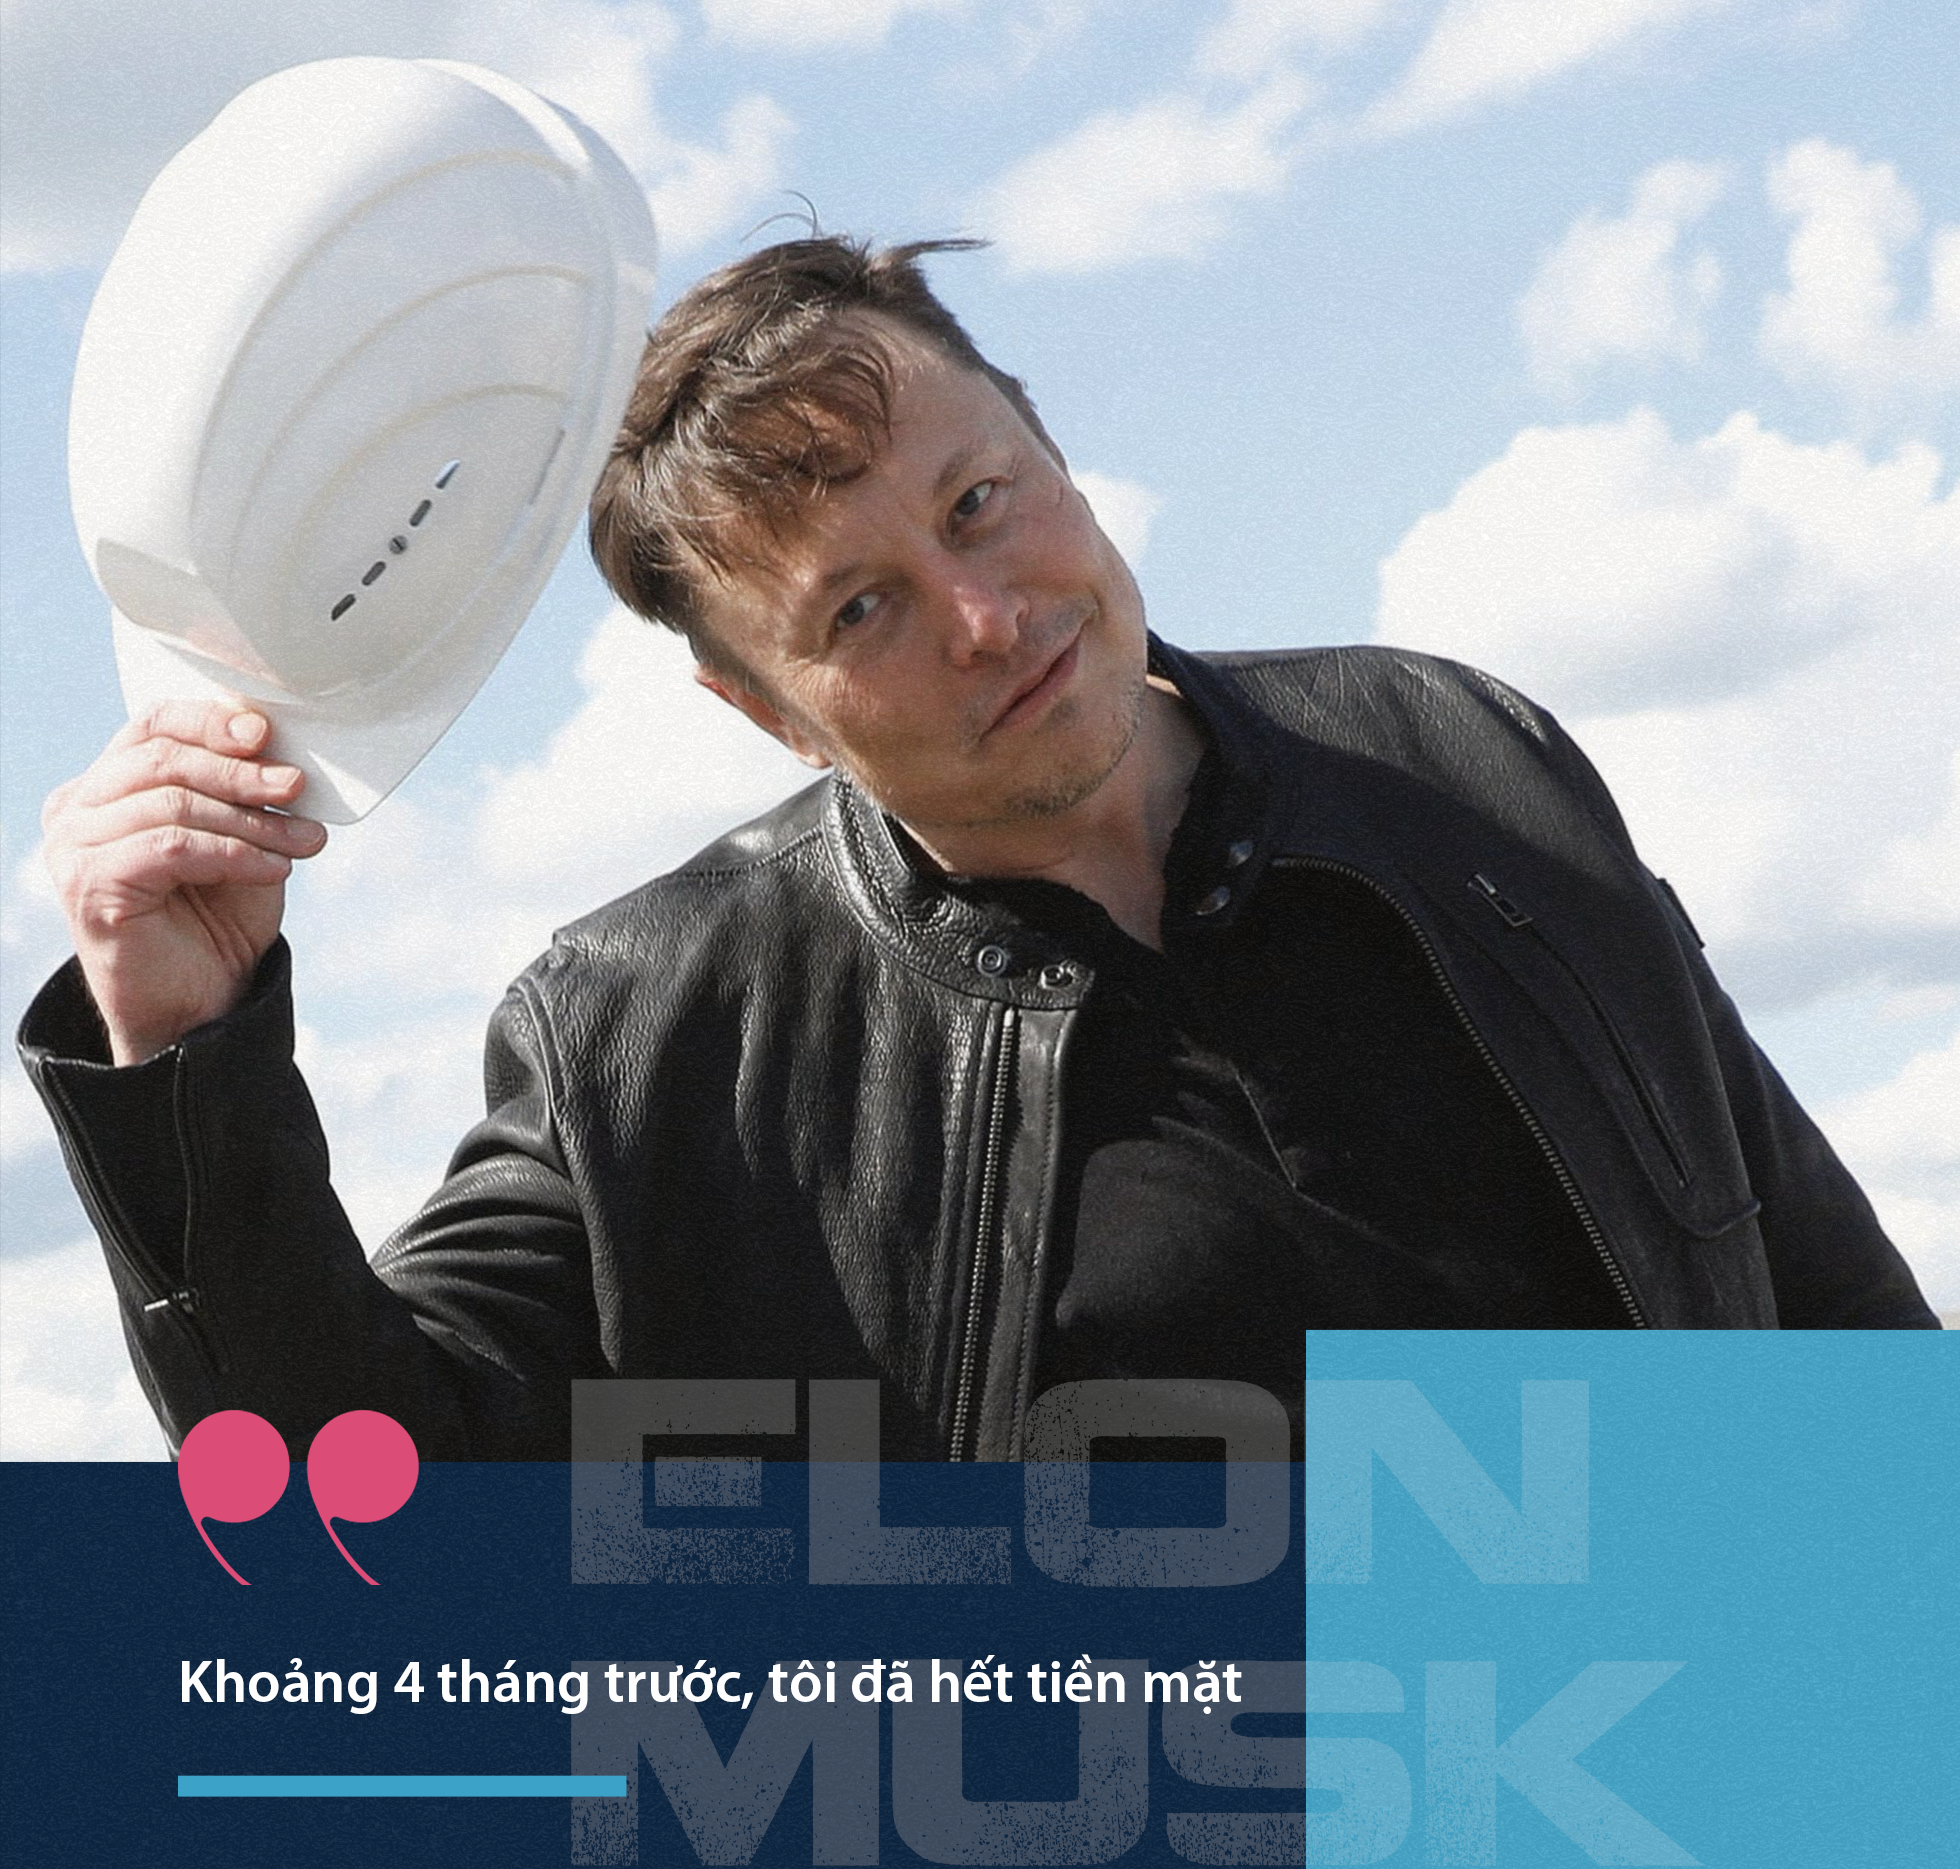 Hé lộ về gã ngông Elon Musk, tỷ phú lắm tài nhiều tật nhất hành tinh - 15